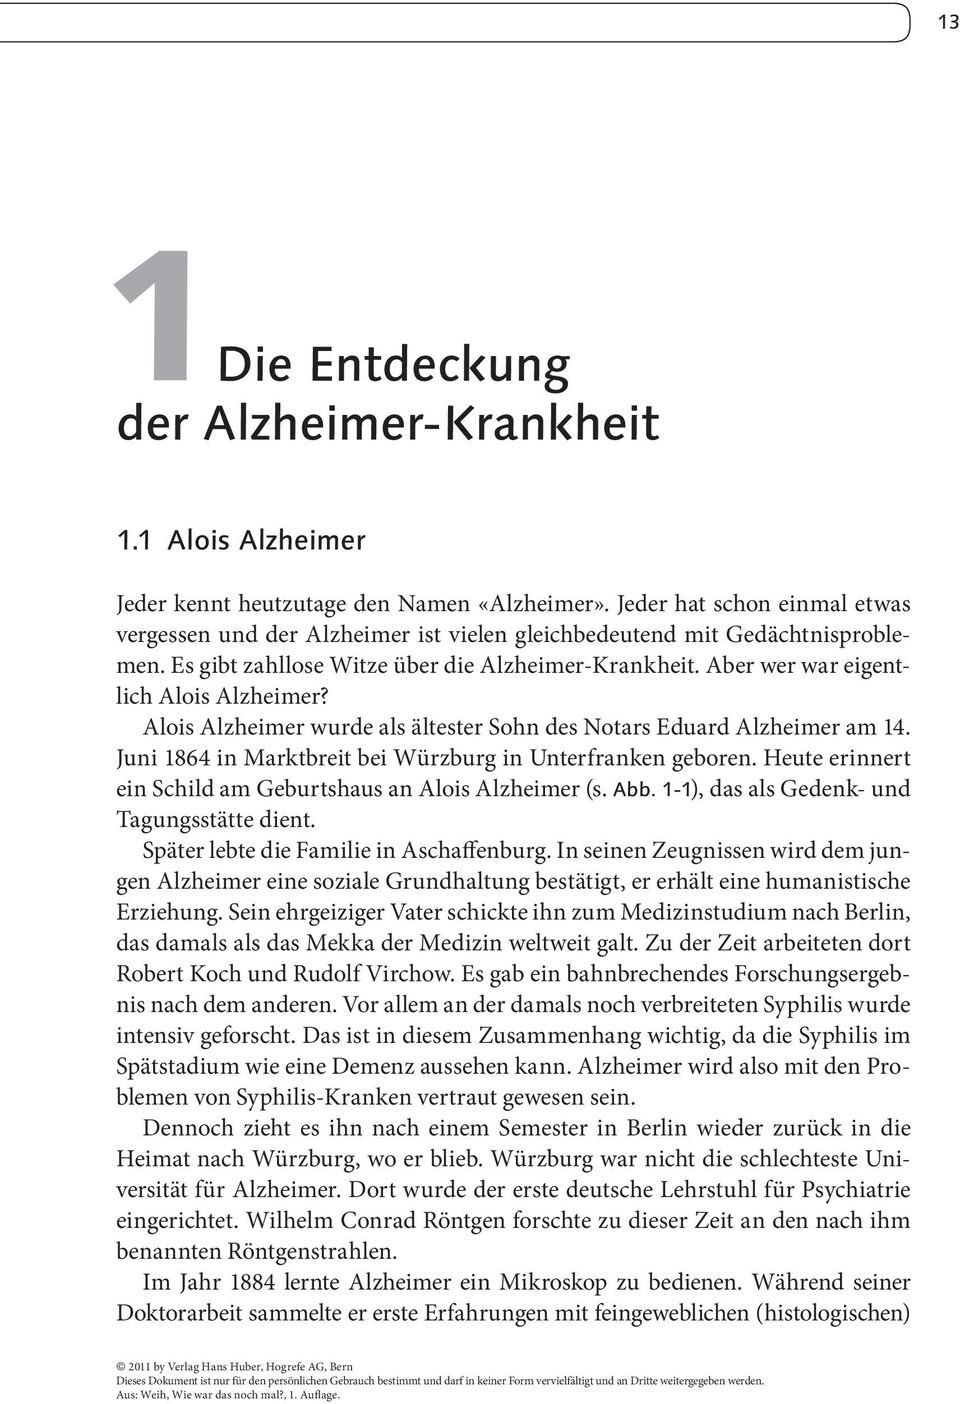 Aber wer war eigentlich Alois Alzheimer? Alois Alzheimer wurde als ältester Sohn des Notars Eduard Alzheimer am 14. Juni 1864 in Marktbreit bei Würzburg in Unterfranken geboren.